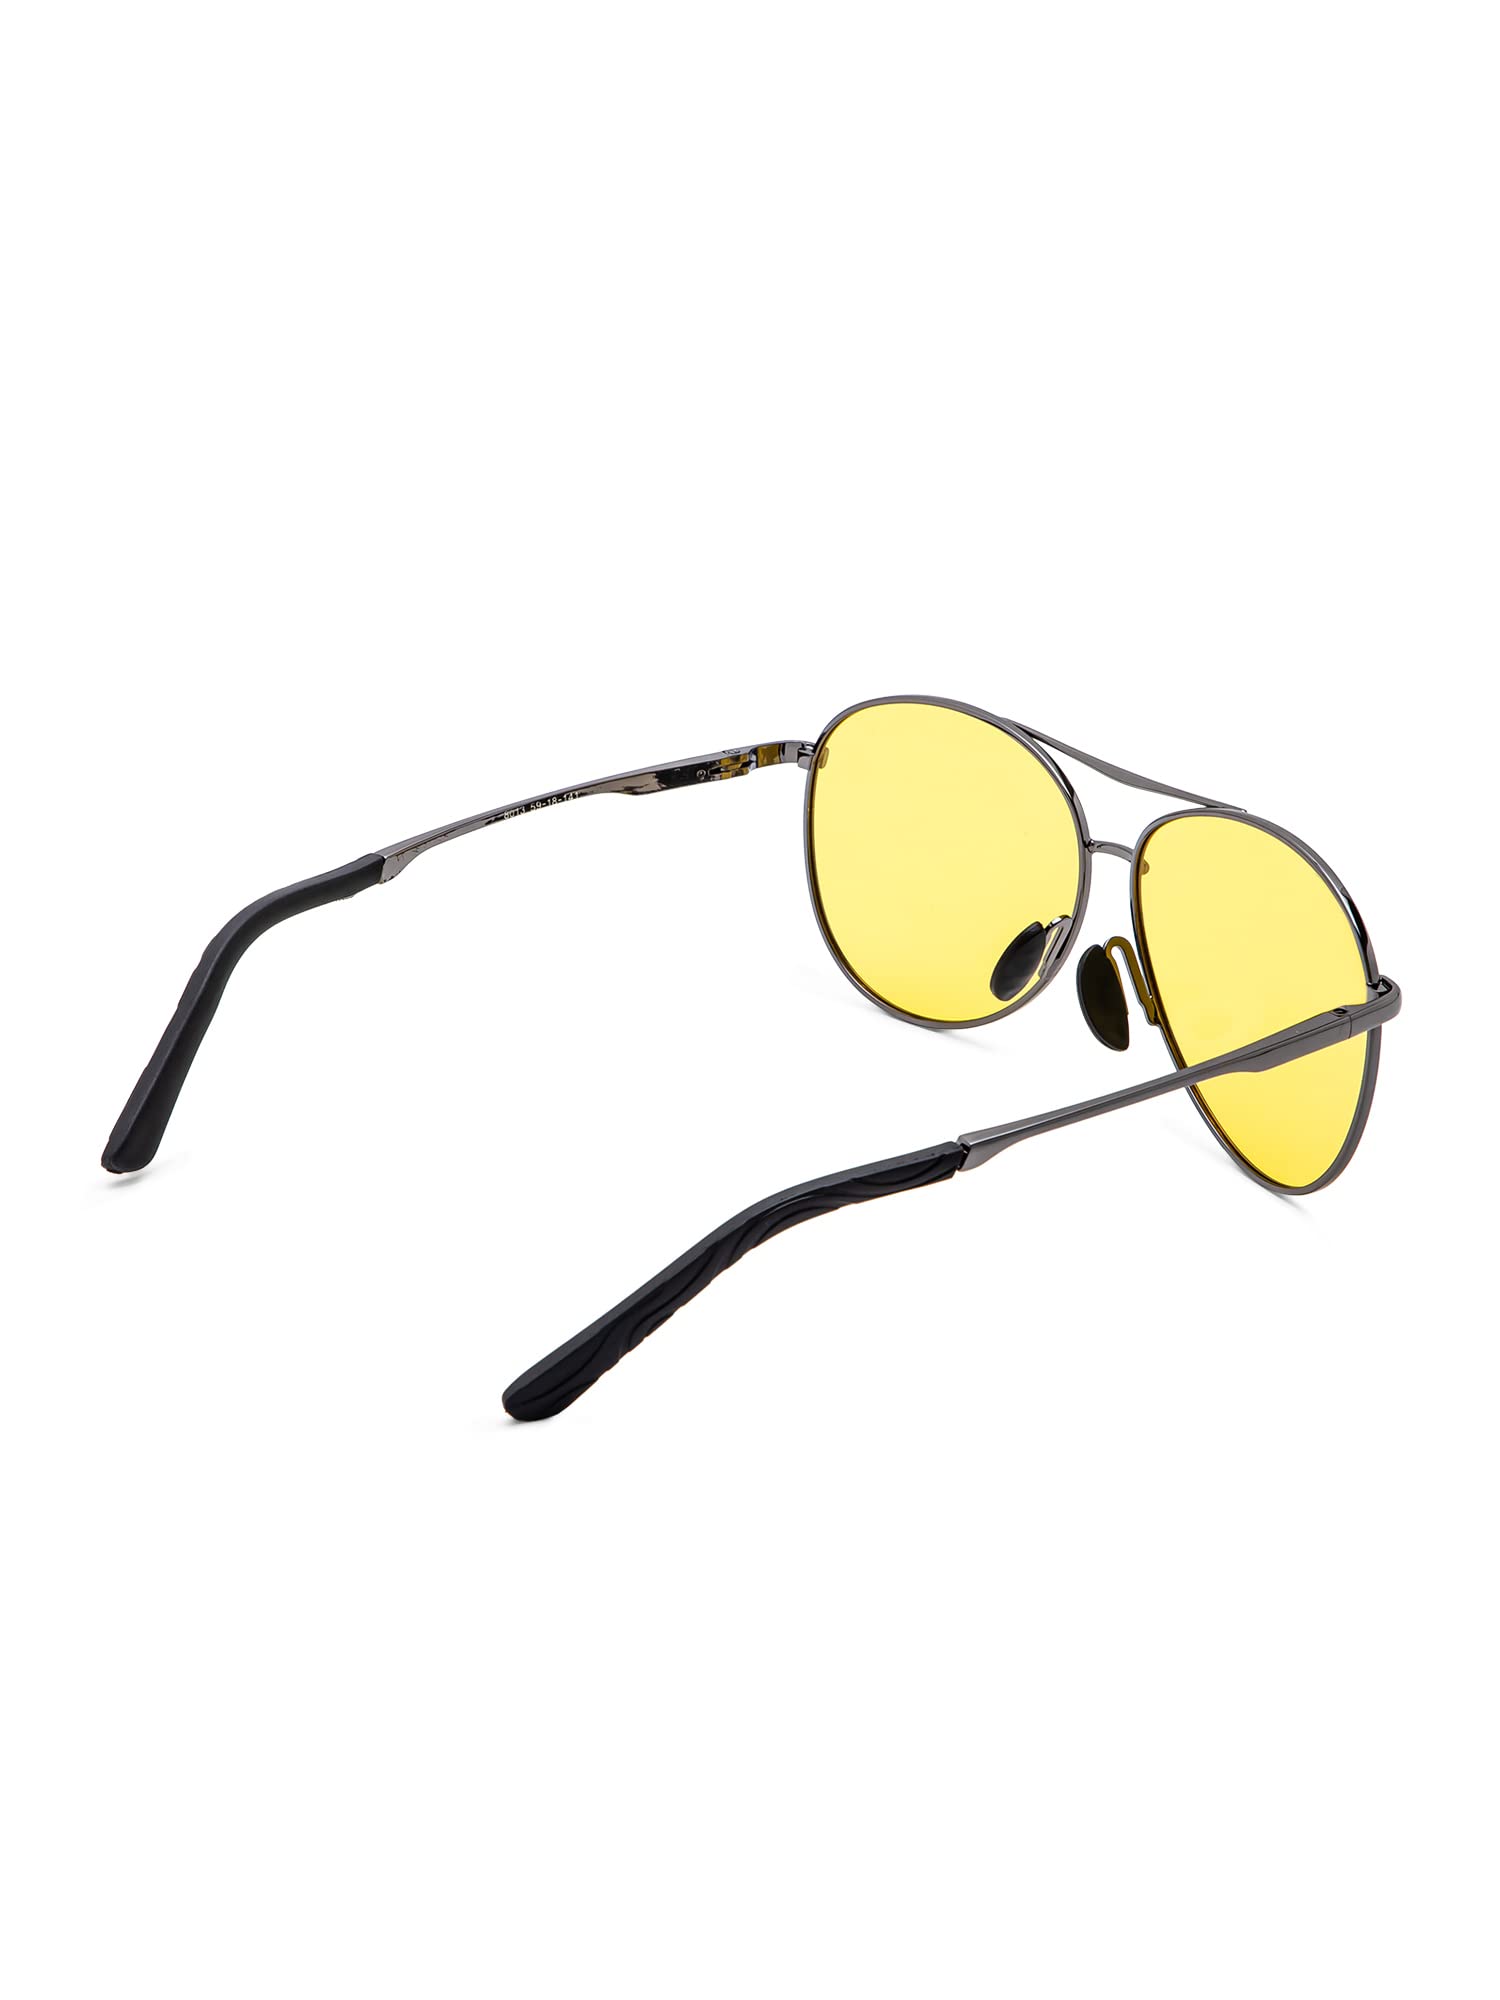 Intellilens Aviator Night Driving Polarized & UV Protected Sunglasses For Men & Women | Goggles for Men & Women (59-18-141)